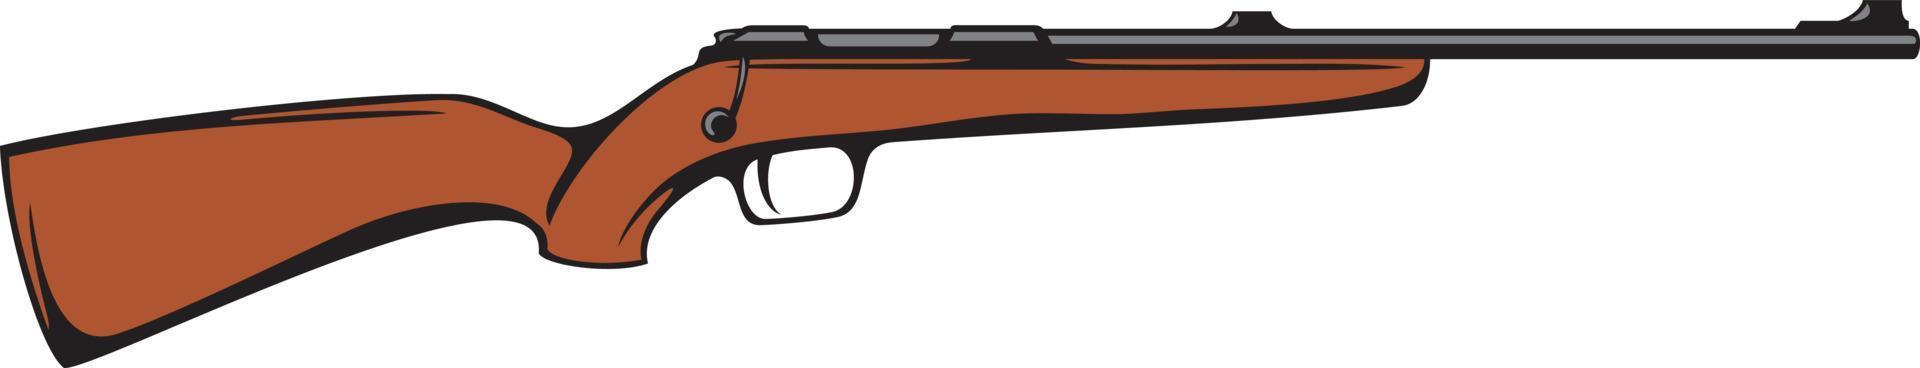 color del rifle de caza. ilustración vectorial vector